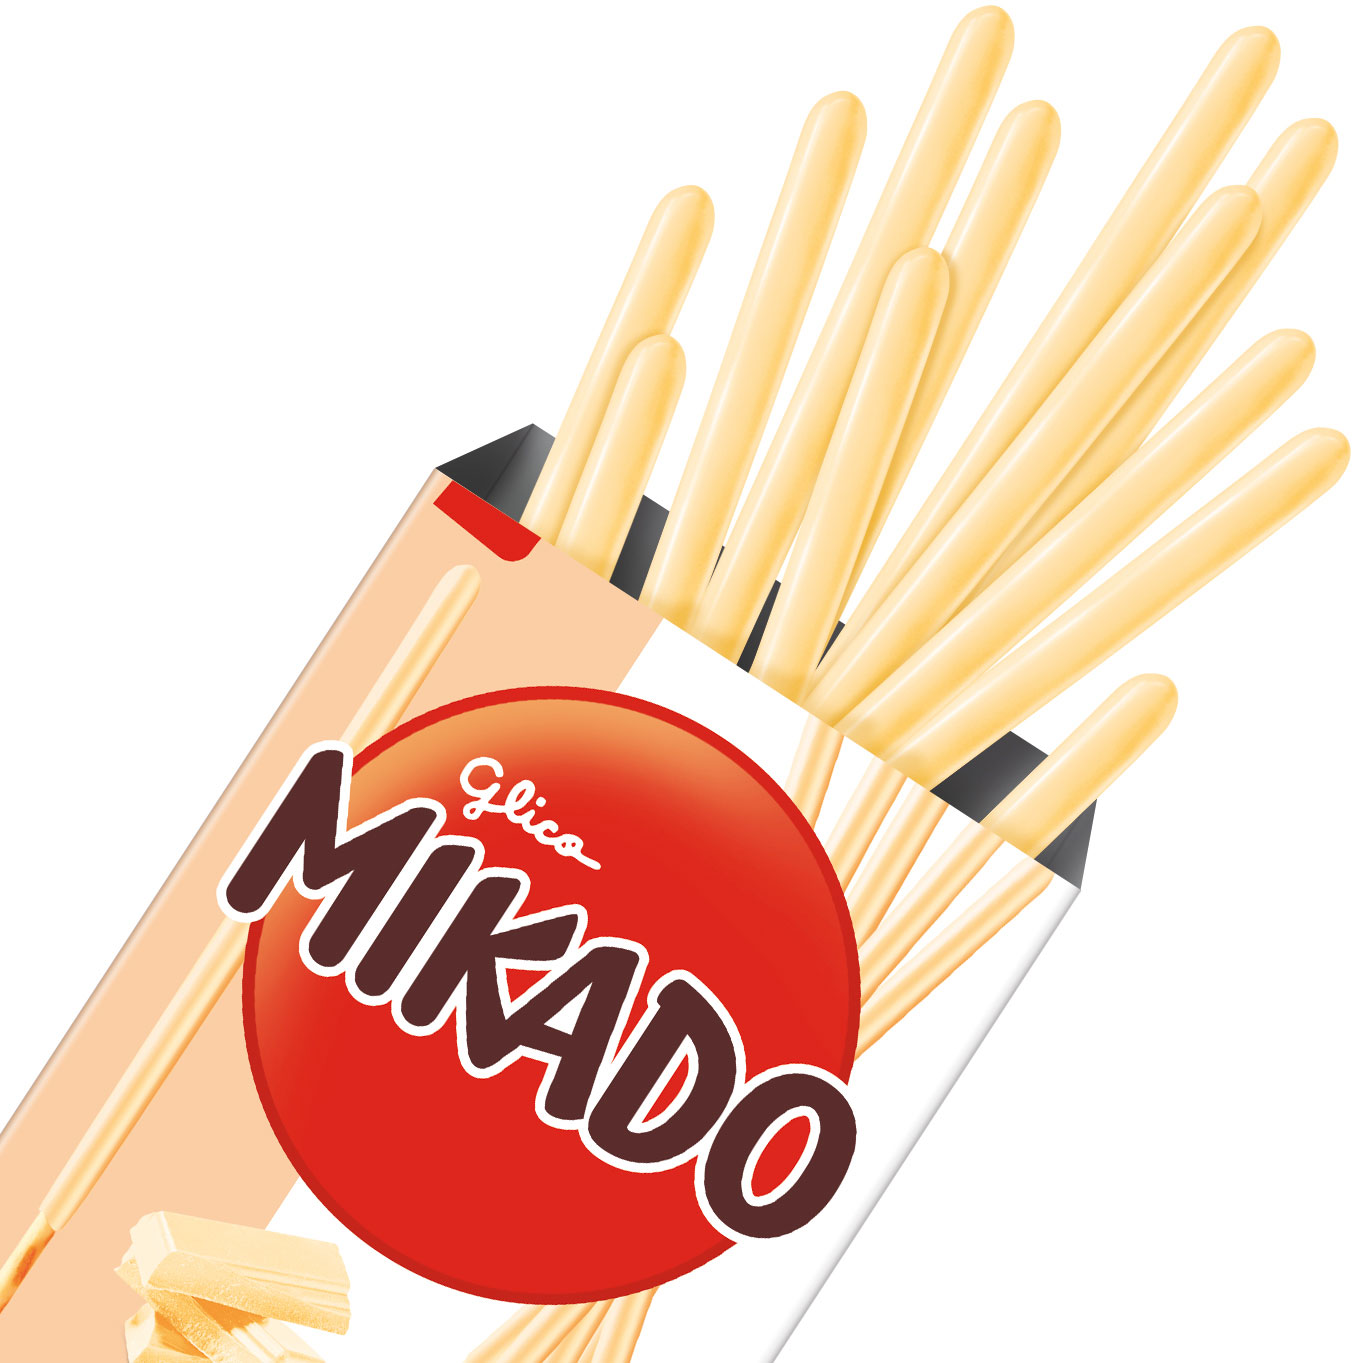 Un emballage beige et blanc sur fond blanc, au centre un rond rouge Mikado et derrière des biscuits en bâtonnet au chocolat blanc et plusieurs bâtonnets qui sortent du paquet